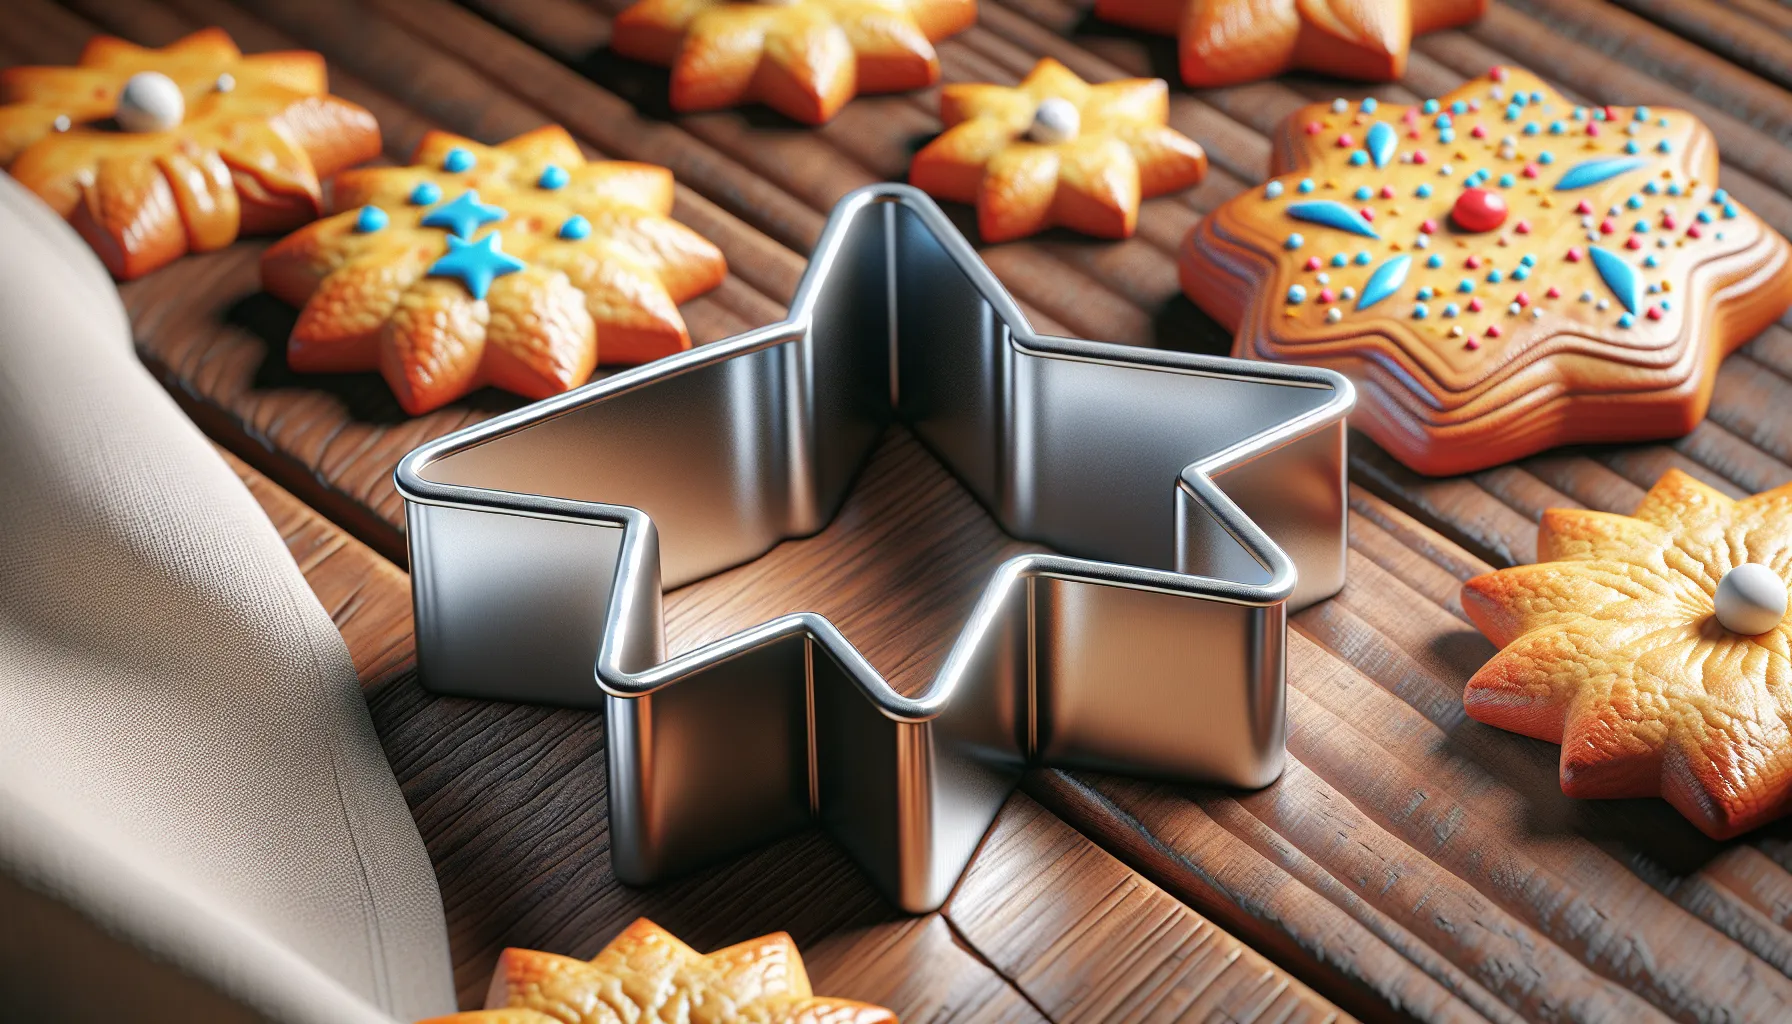 Um molde de biscoito é uma ferramenta usada para dar forma aos biscoitos antes de assá-los. Geralmente feito de metal ou plástico, o molde de biscoito pode ter diferentes formatos, como estrelas, corações, animais, entre outros. Ele é pressionado sobre a massa de biscoito para cortar a forma desejada. Os moldes de biscoito são uma ótima